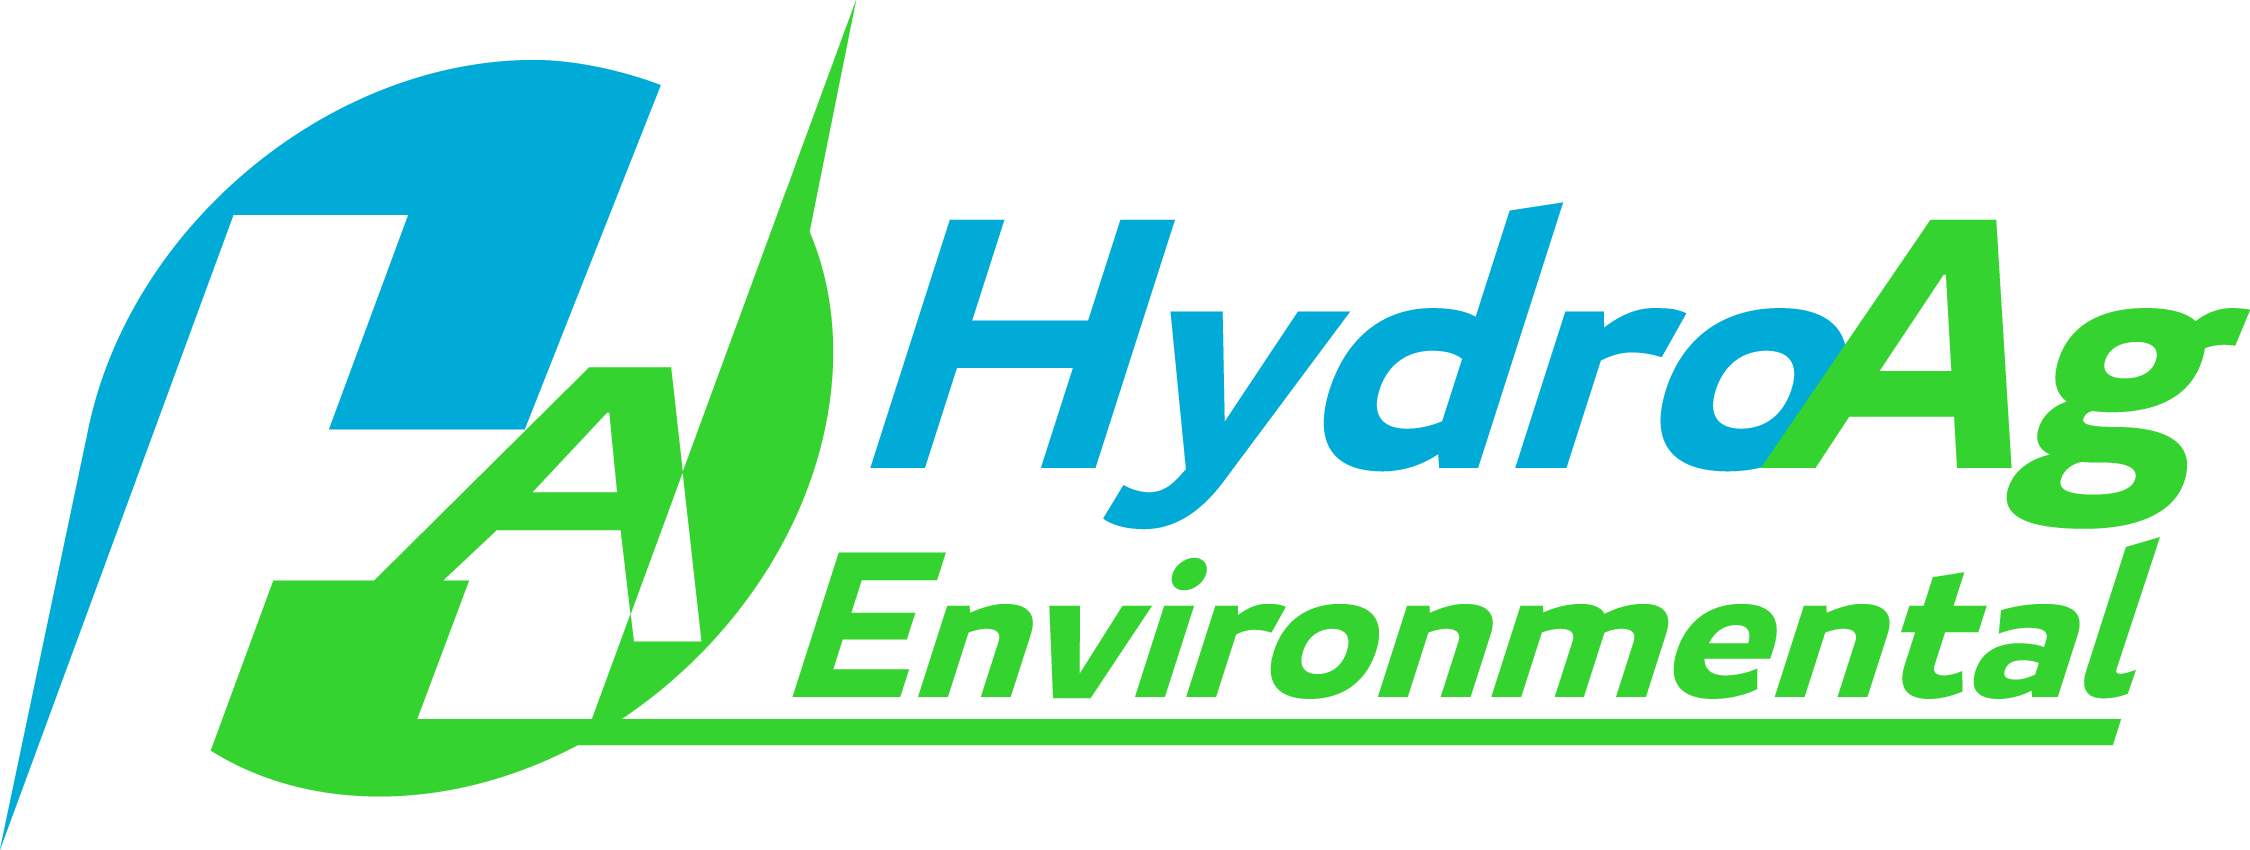 HydroAg logo